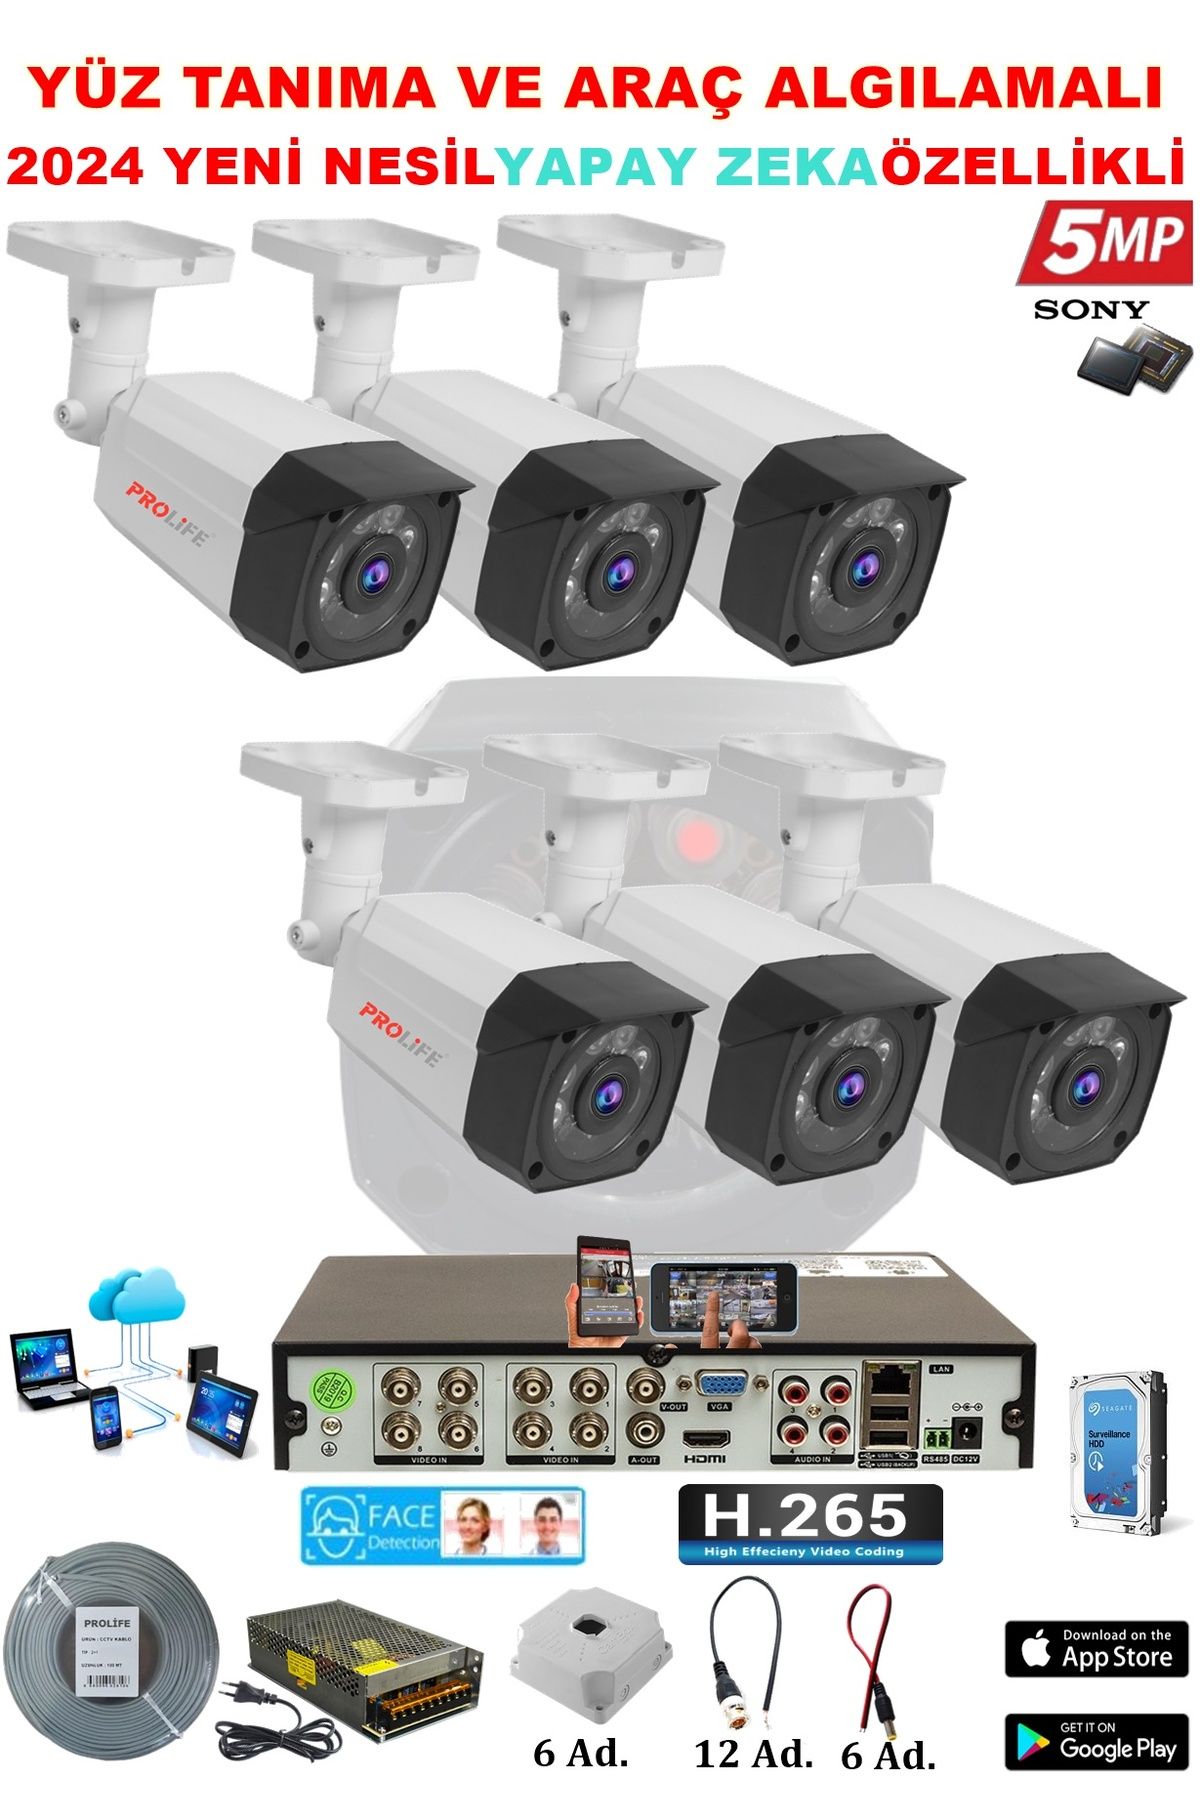 PROLİFE 6 Kameralı Yapay Zeka Özellikli Yüz Tanıma Ve Araç Algılamalı 5 Mp Güvenlik Kamerası Seti